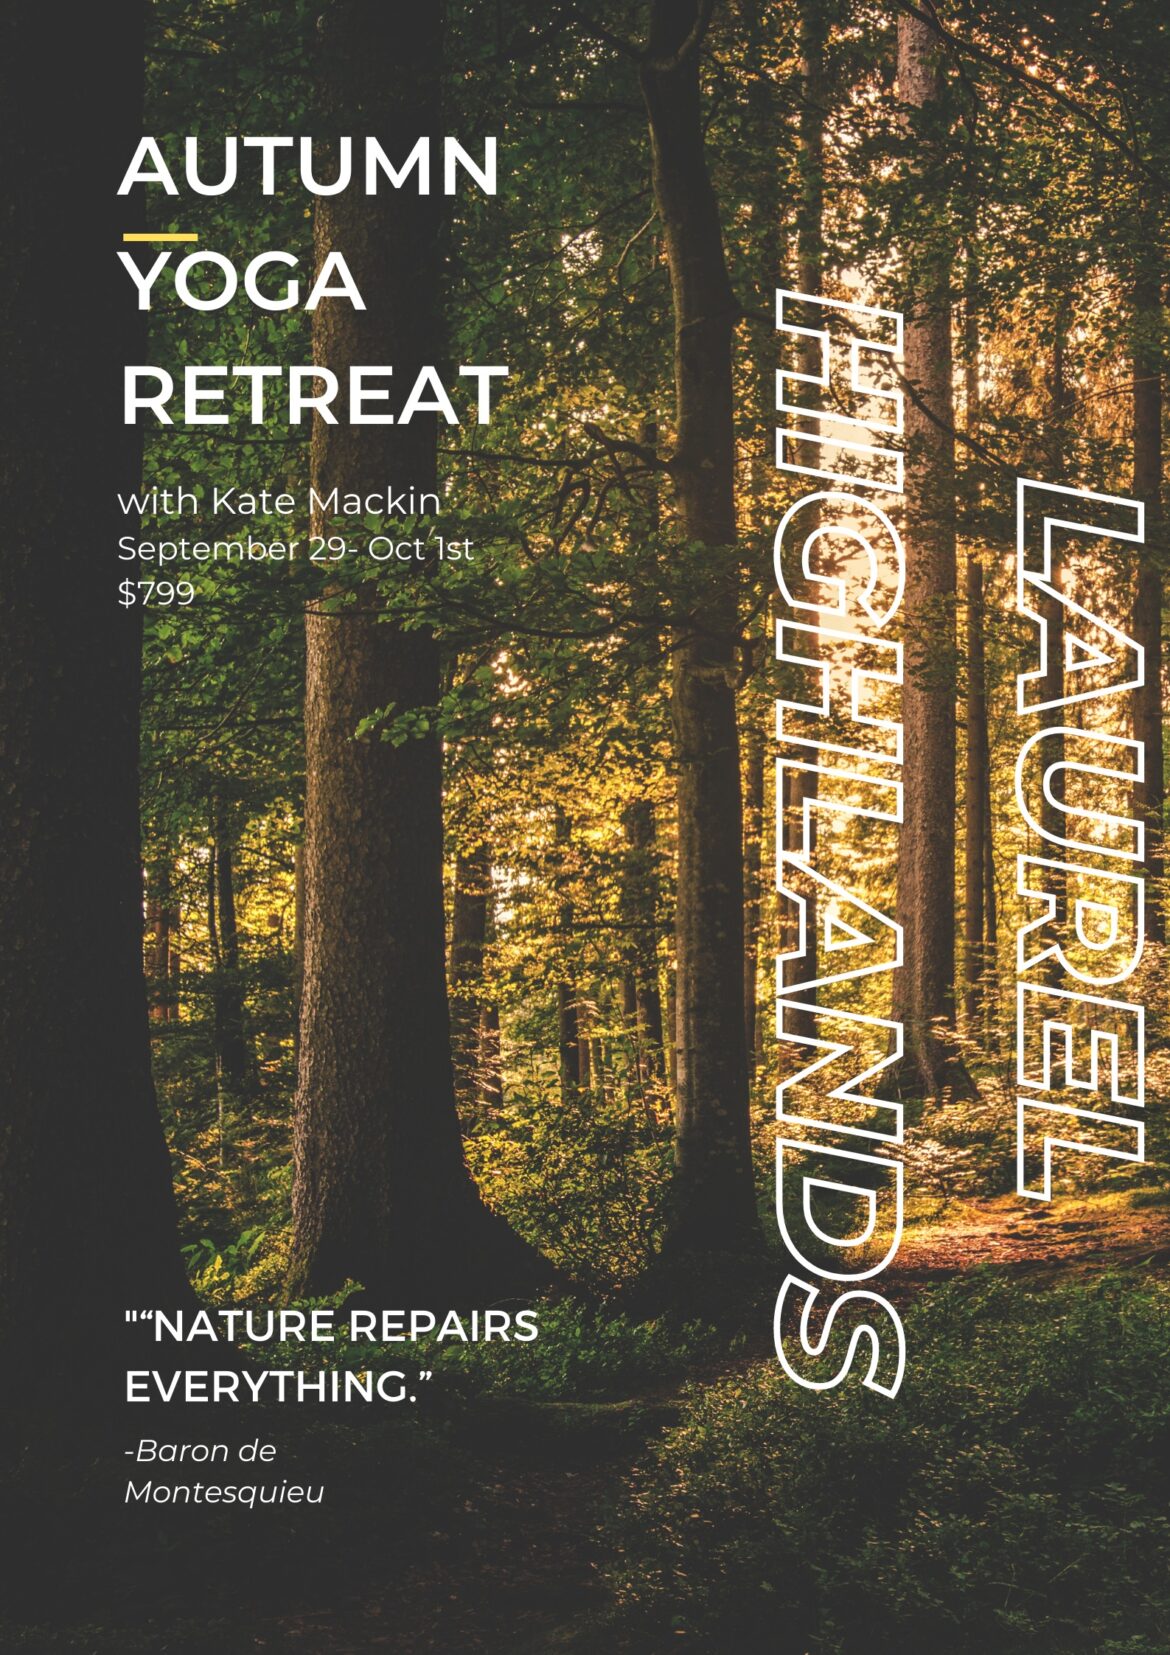 Autumn Yoga Retreat in the Laurel Highlands